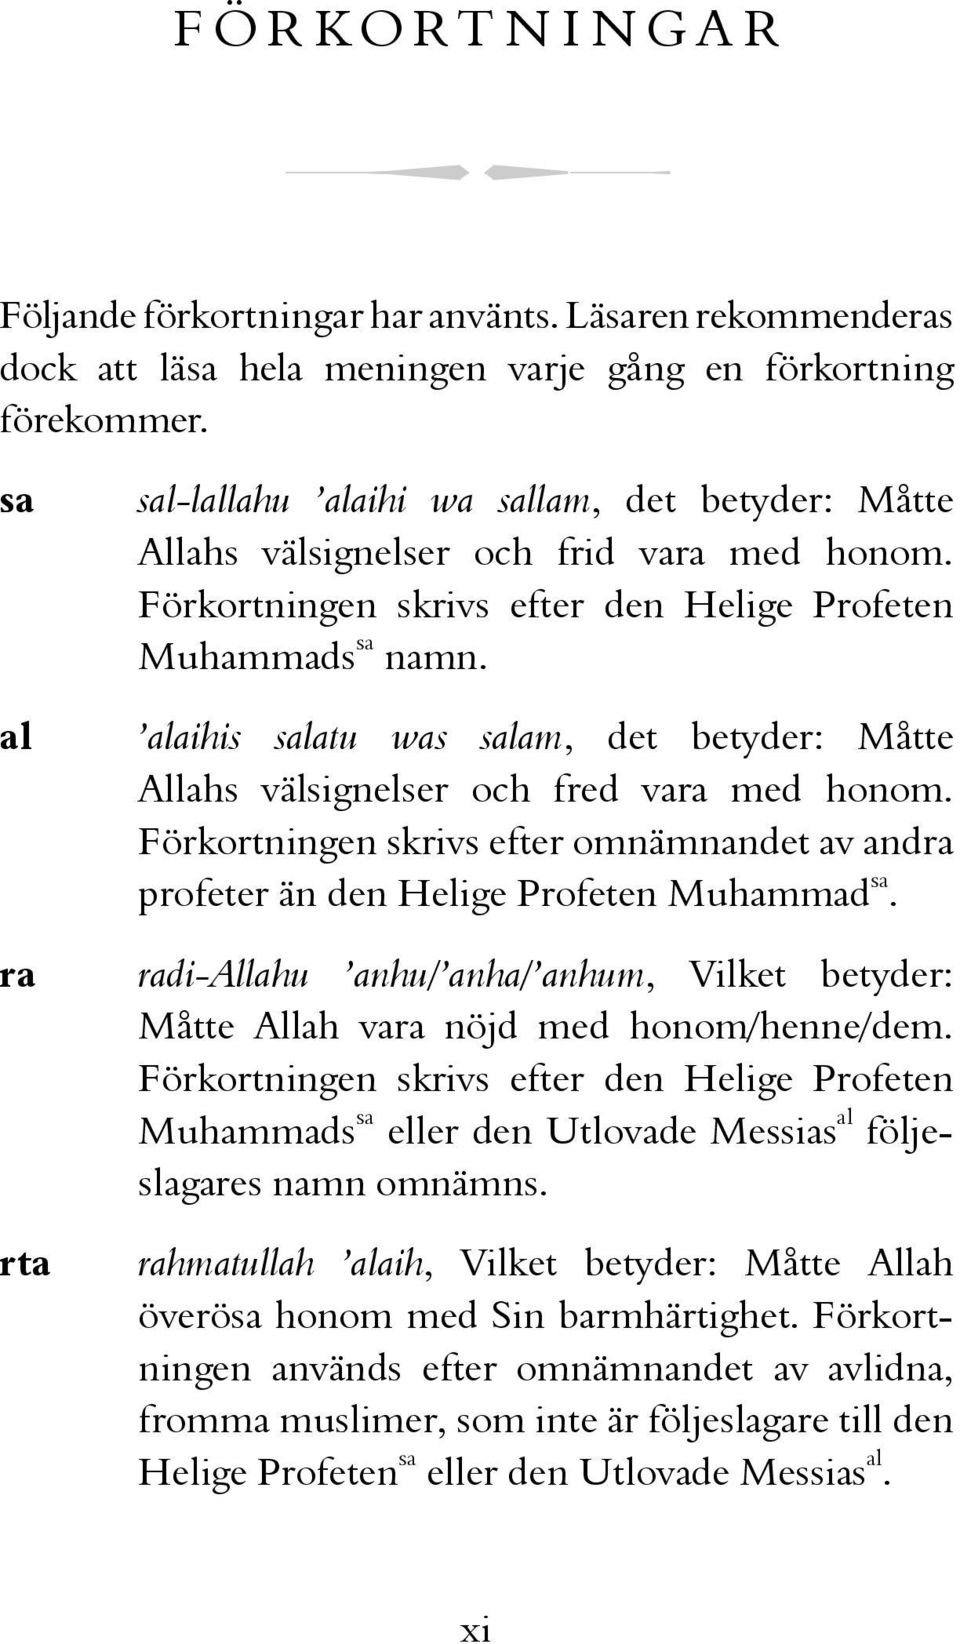 alaihis salatu was salam, det betyder: Måtte Allahs välsignelser och fred vara med honom. Förkortningen skrivs efter omnämnandet av andra profeter än den Helige Profeten Muhammad sa.